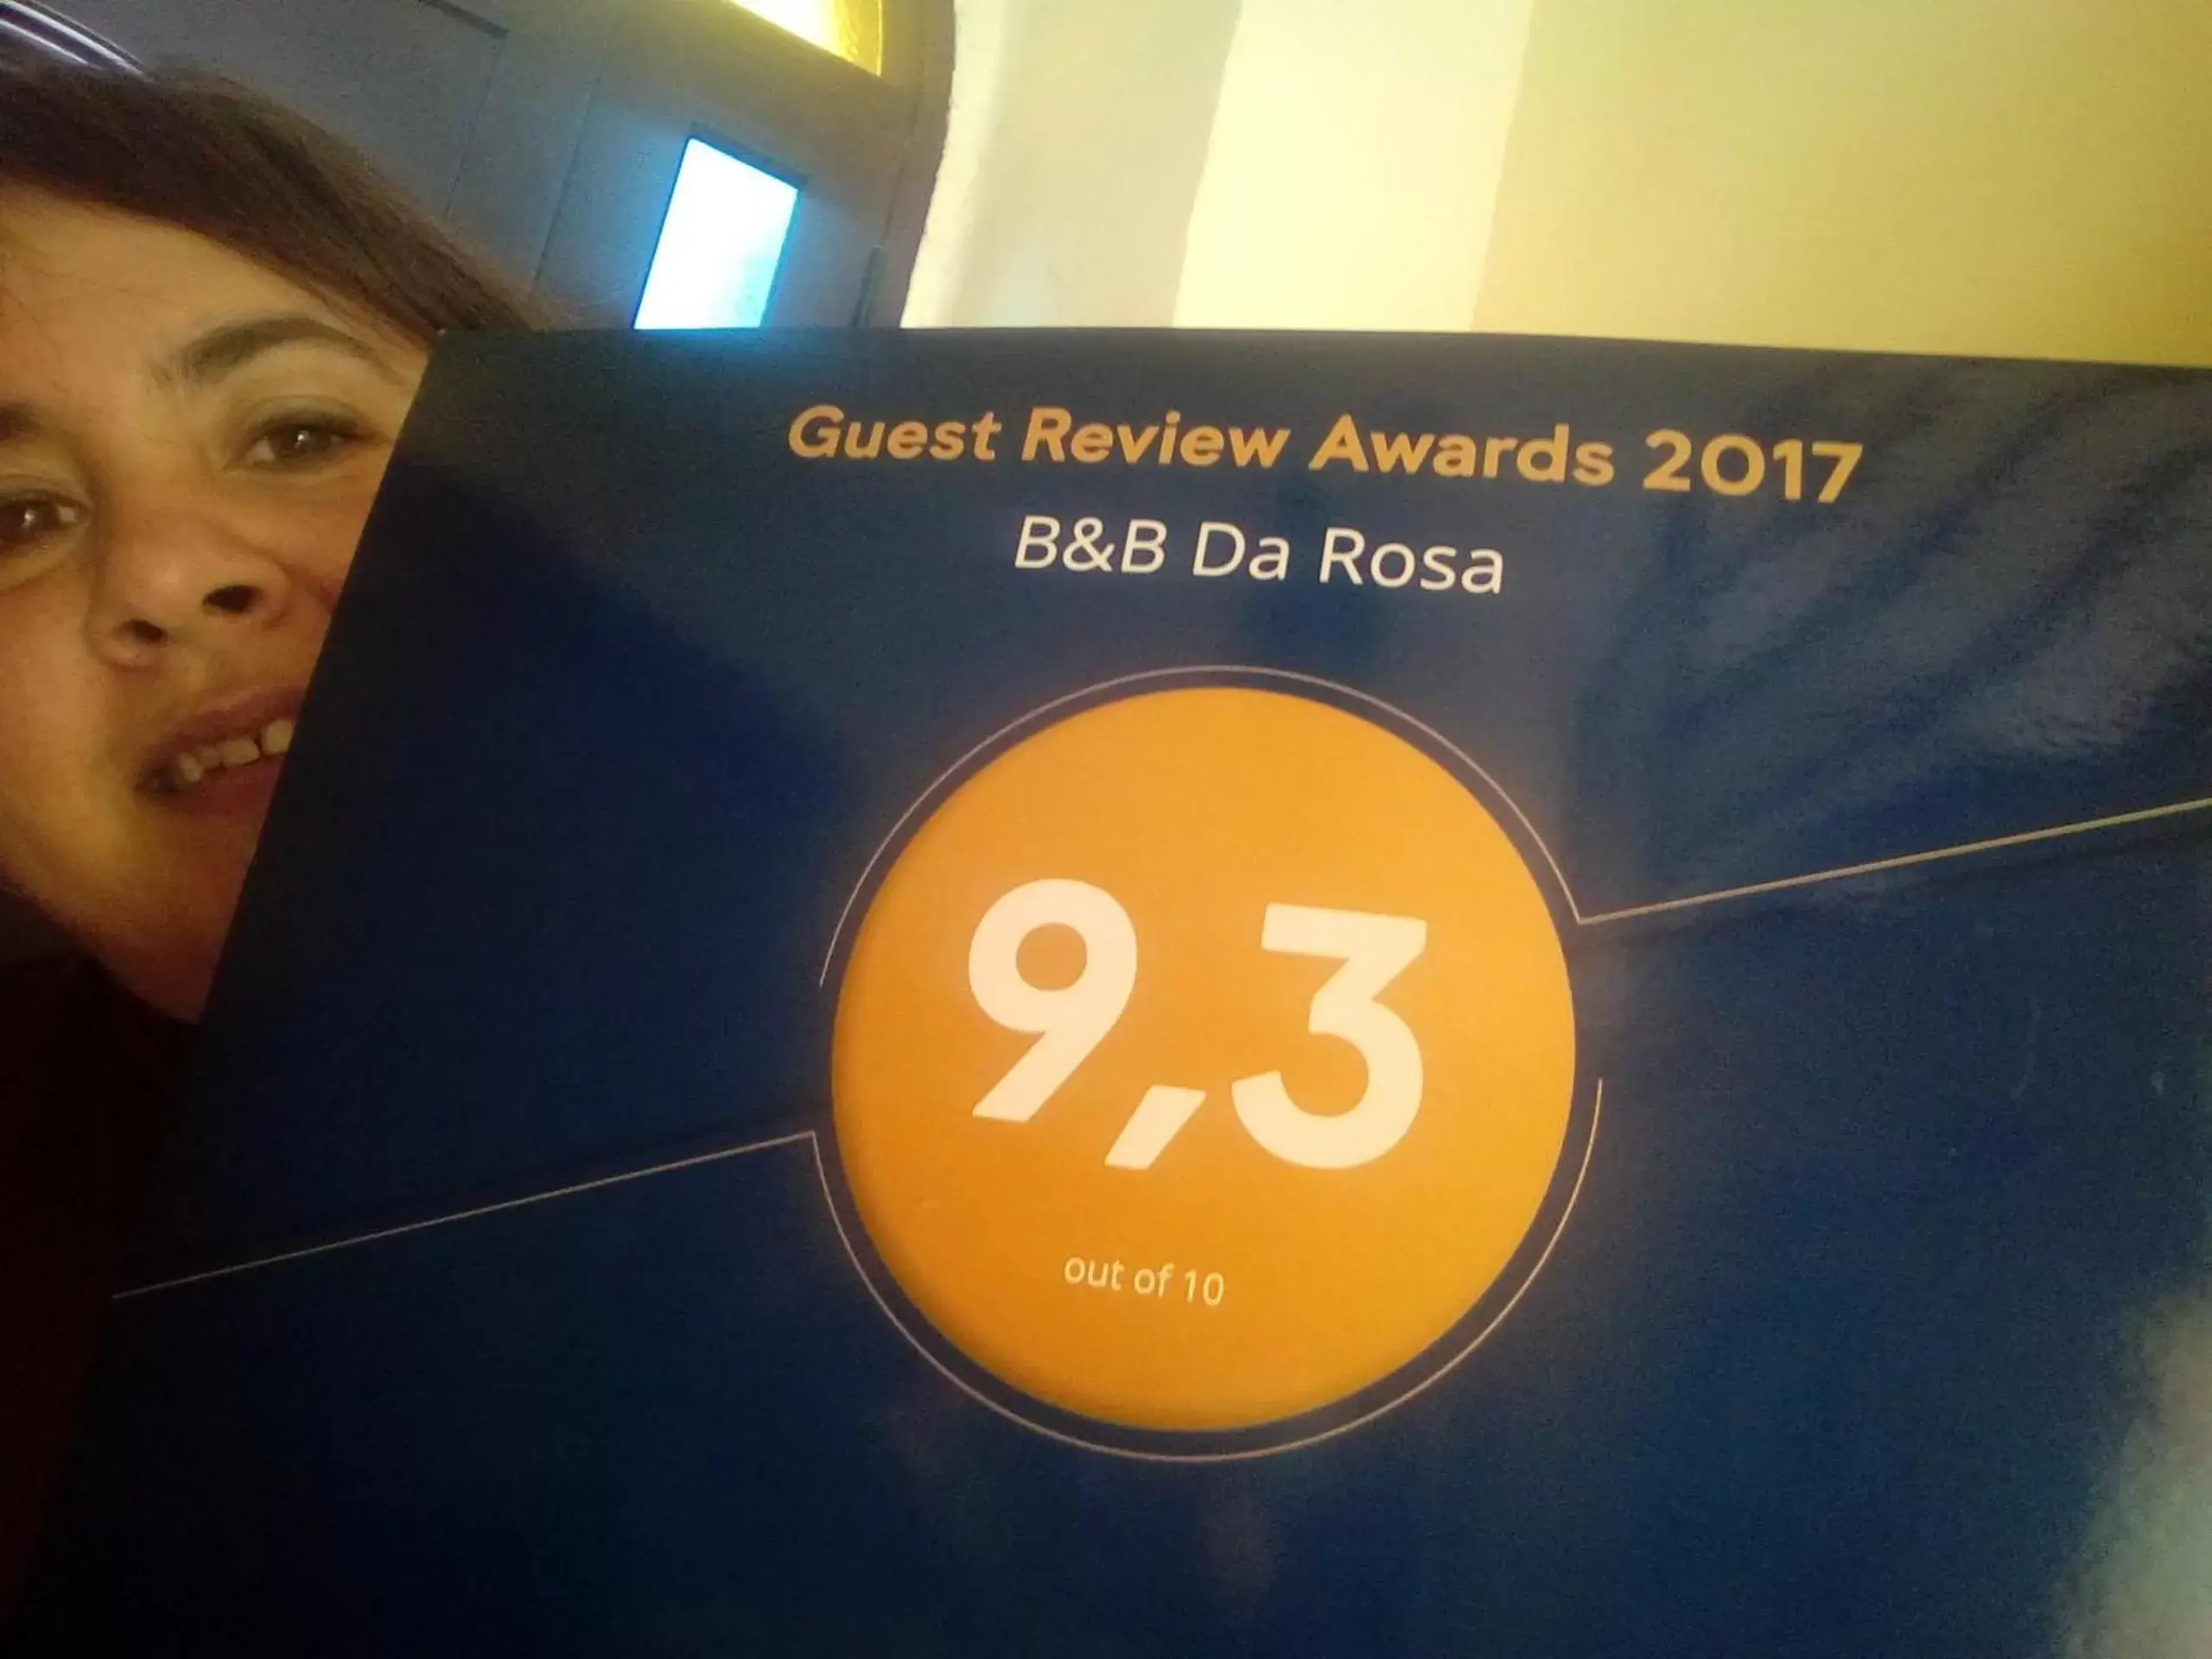 Certificate/Award in B&B Da Rosa